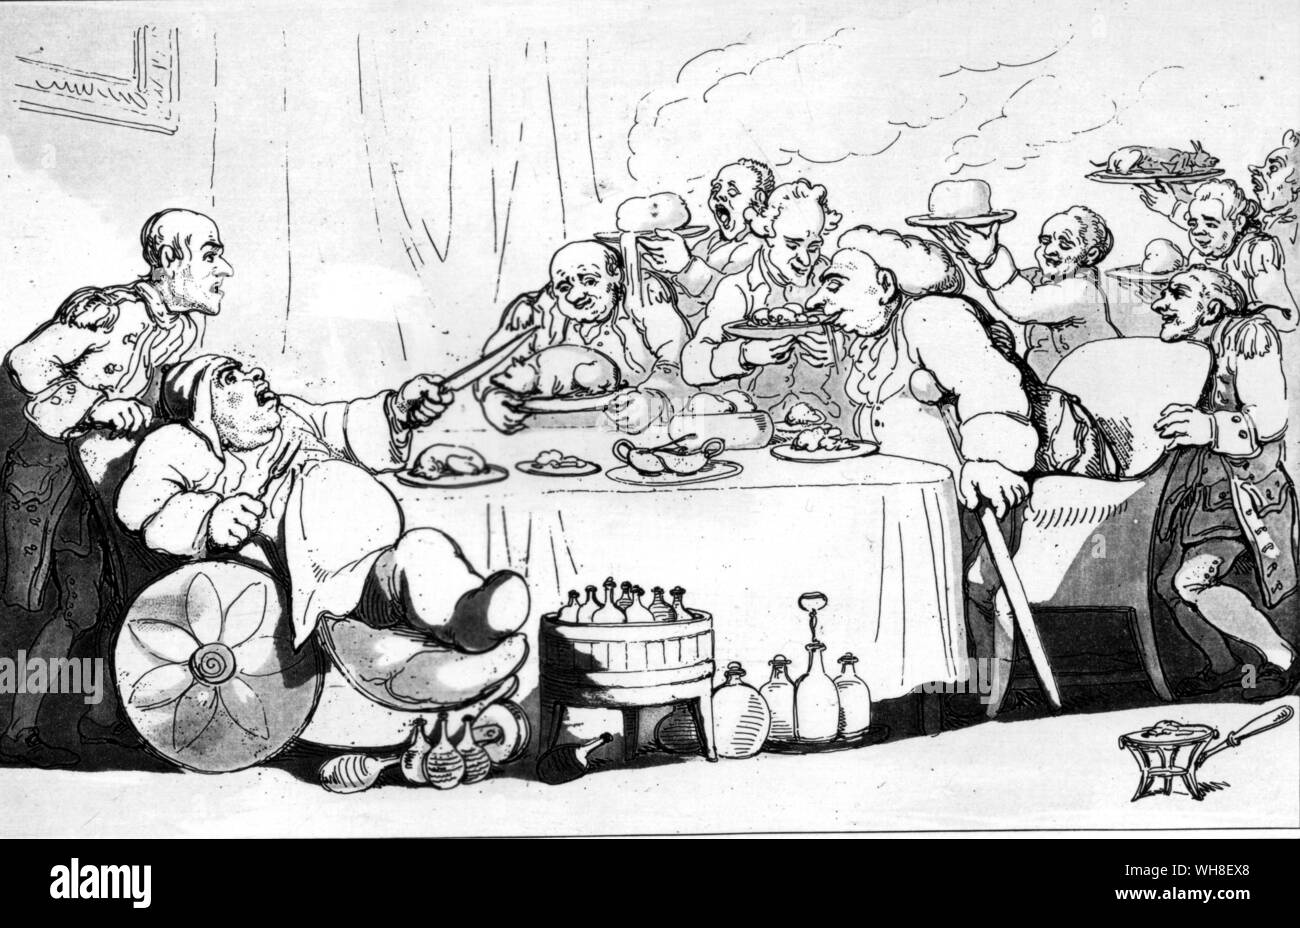 Komfort der Badewanne 1798 von Thomas Rowlandson (1756-1827). Englisch Illustrator von Büchern und Zeitschriften, spezialisiert auf historische Ereignisse und die Innenstadt von London.. Stockfoto